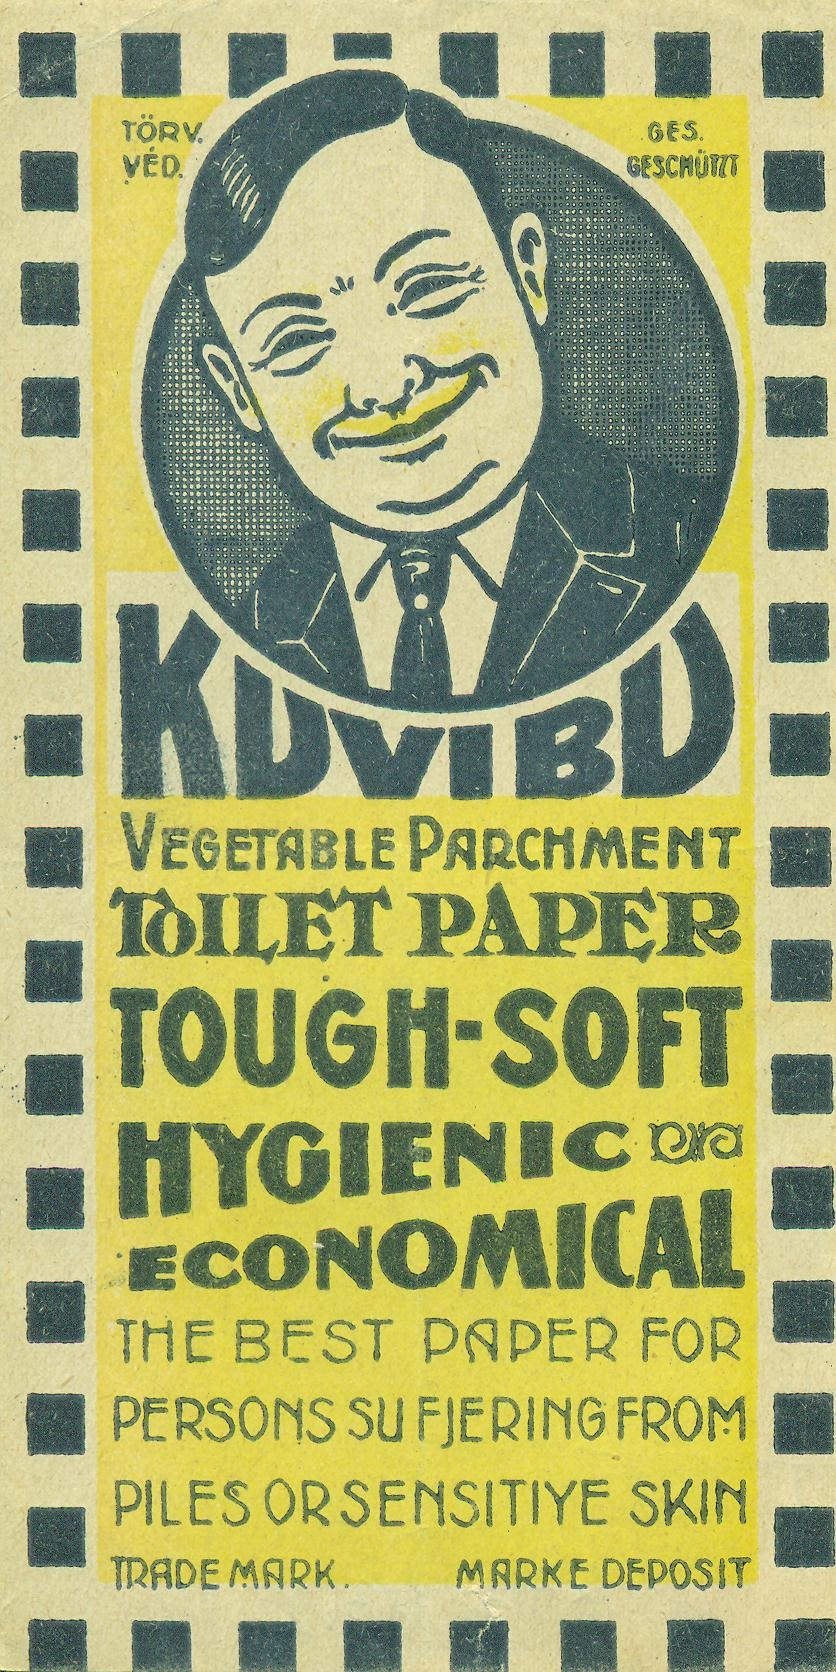 KUVIBU TOILET PAPER (Magyar Kereskedelmi és Vendéglátóipari Múzeum CC BY-NC-SA)